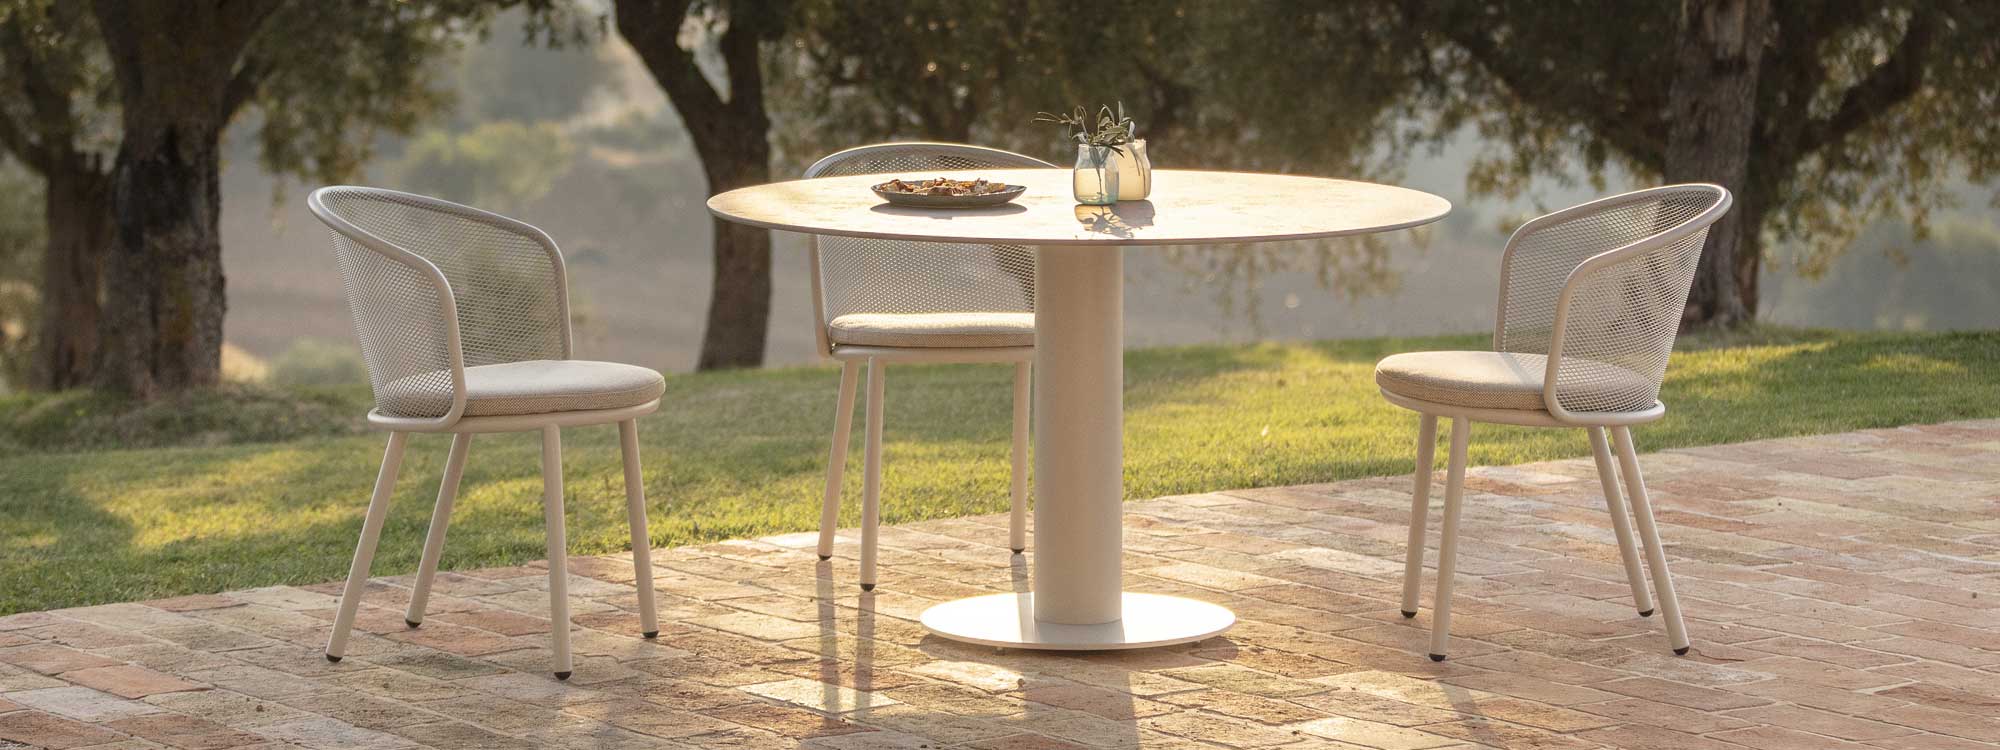 White Branta circular outdoor table and Baza garden chair in warm evening sunlight